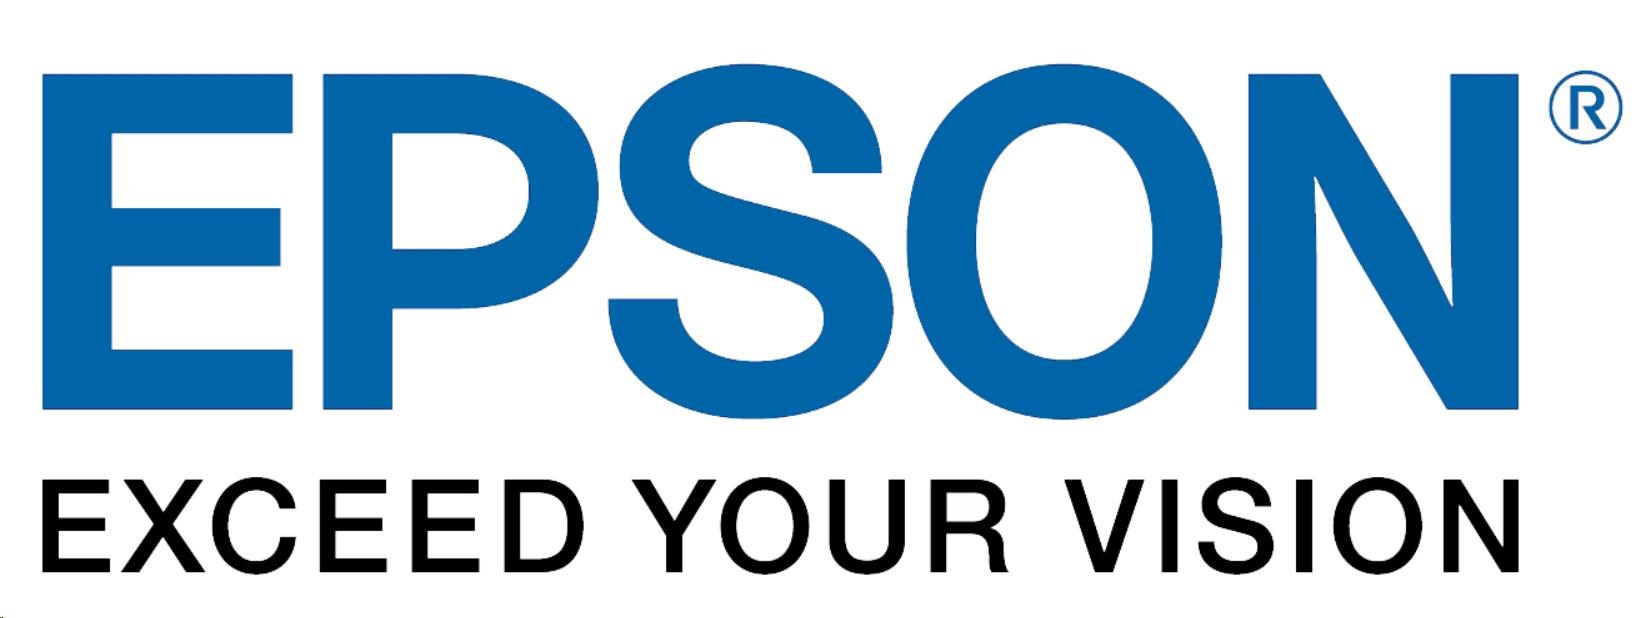 Zásobník papiera Epson - vysokokapacitný zásobník na 3000 listov (cena na vyžiadanie)0 